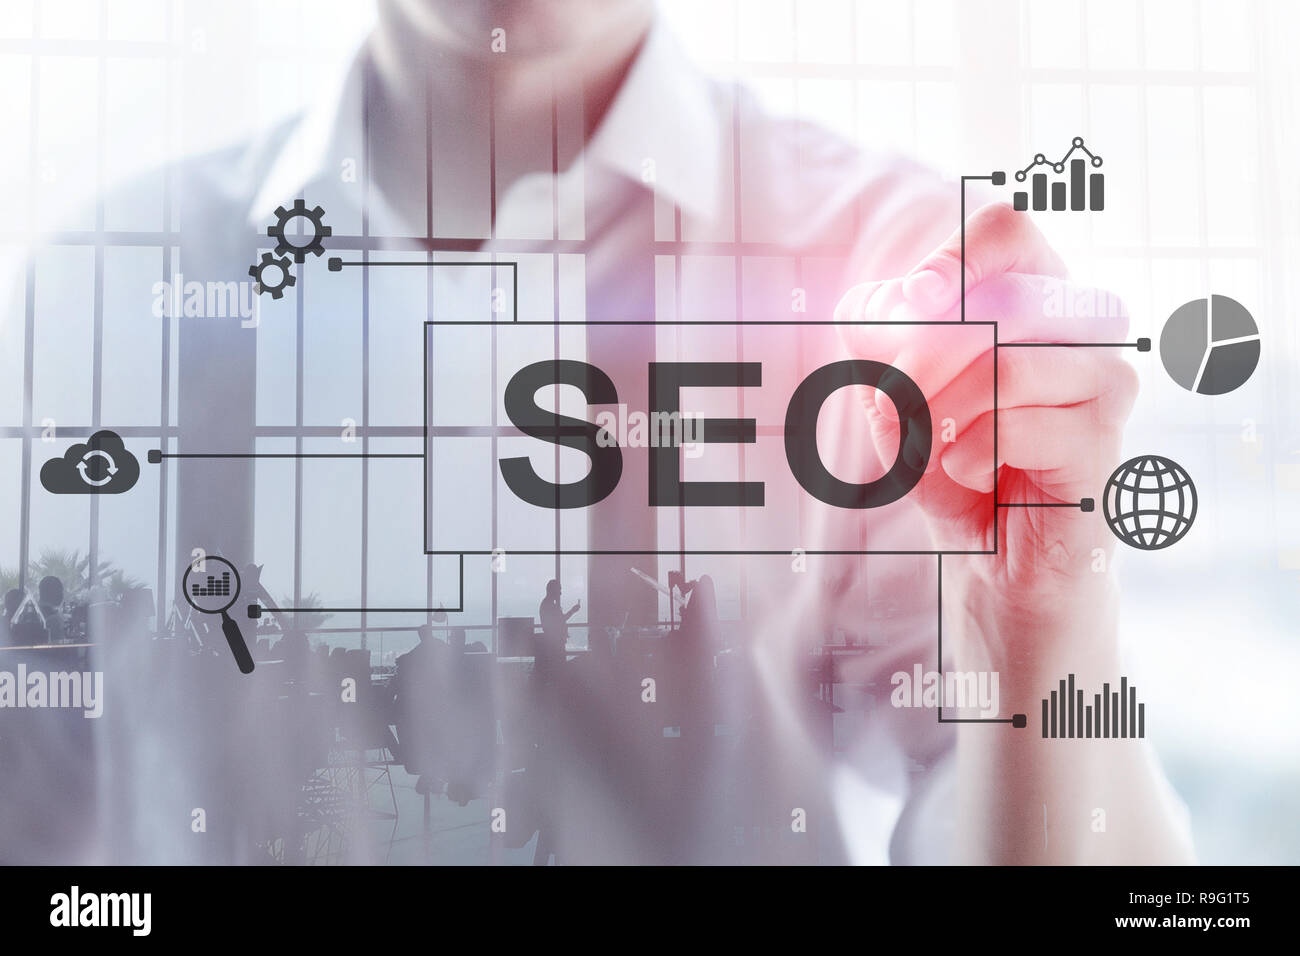 SEO - Suchmaschinenoptimierung, digitales Marketing und Internet Technologie Konzept auf unscharfen Hintergrund Stockfoto